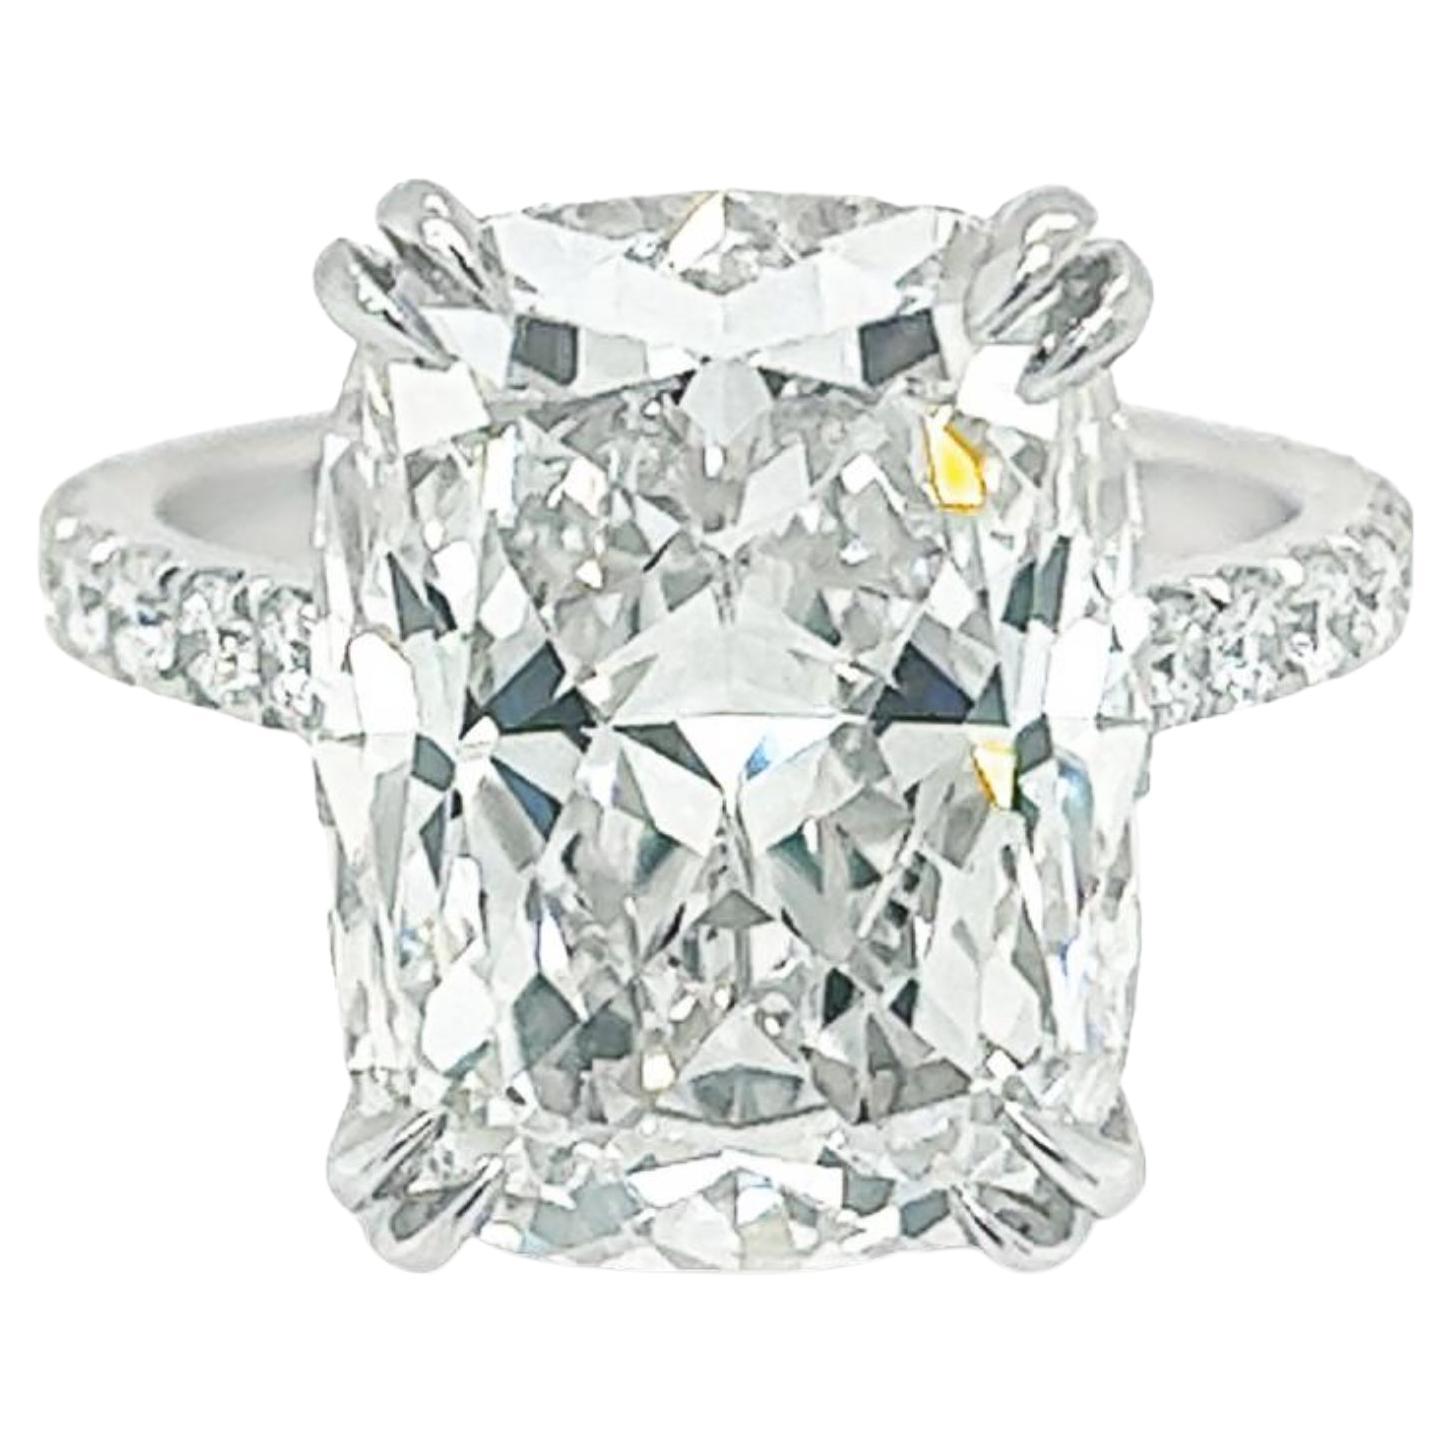 David Rosenberg Bague de fiançailles en diamants taille coussin de 10,07 carats F/VVS1 certifiés GIA